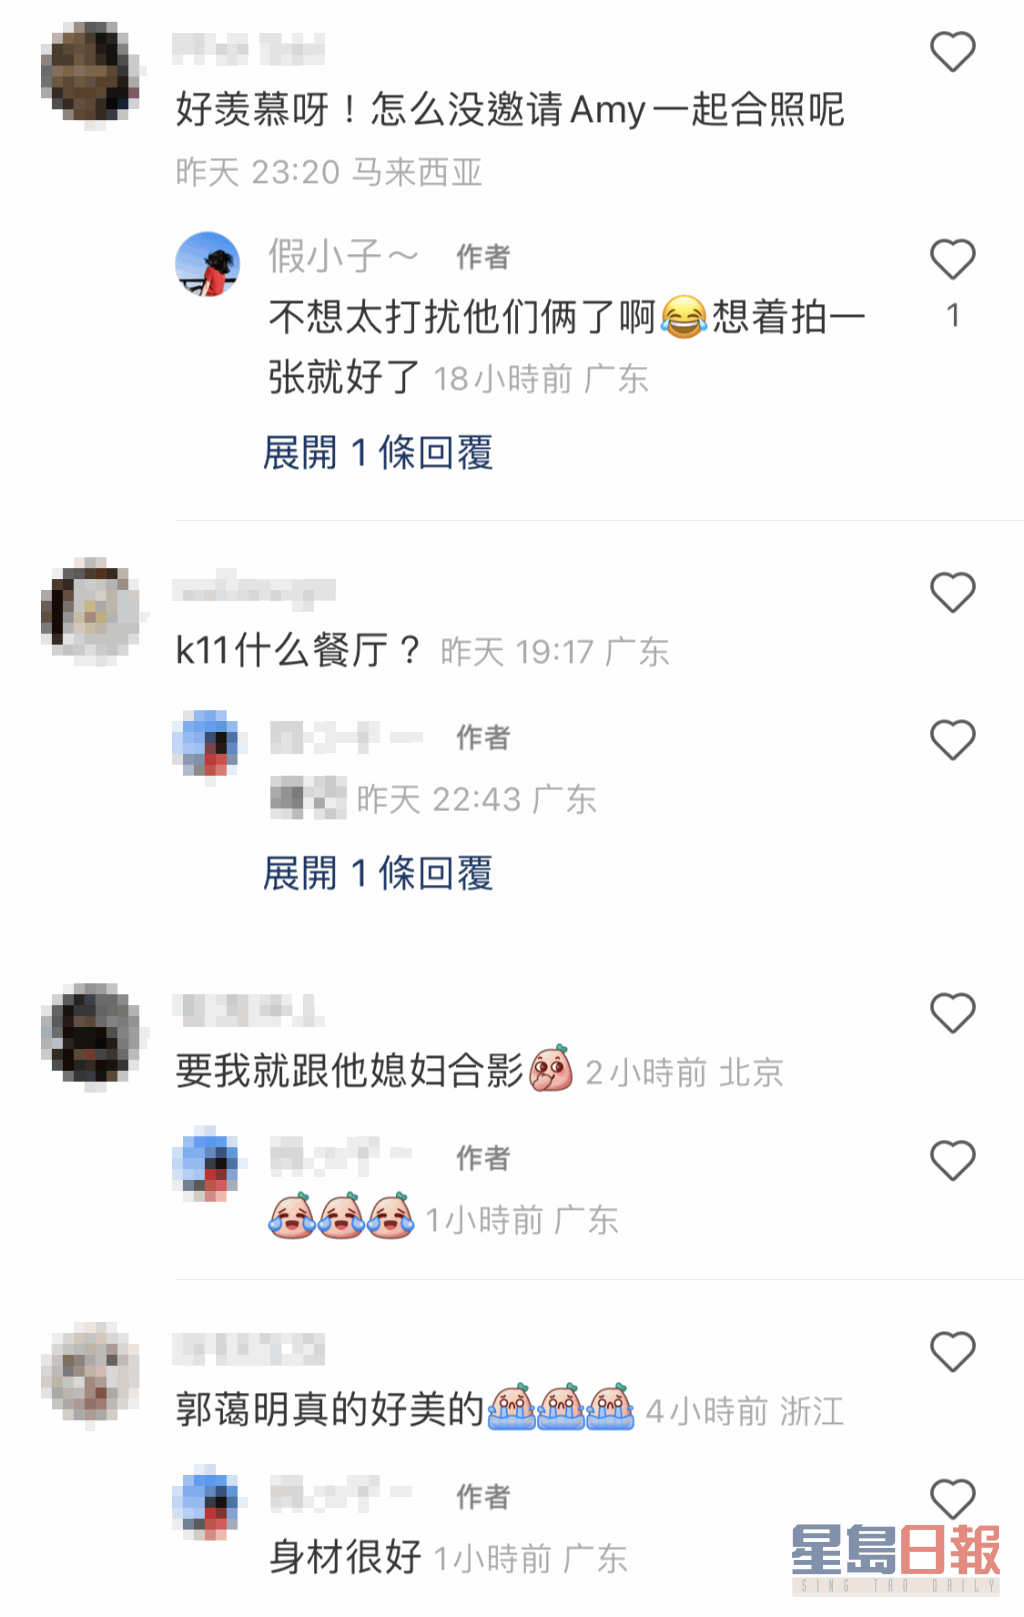 網民指因為不想太過打擾劉青雲夫婦，所以並無找郭藹明合照。